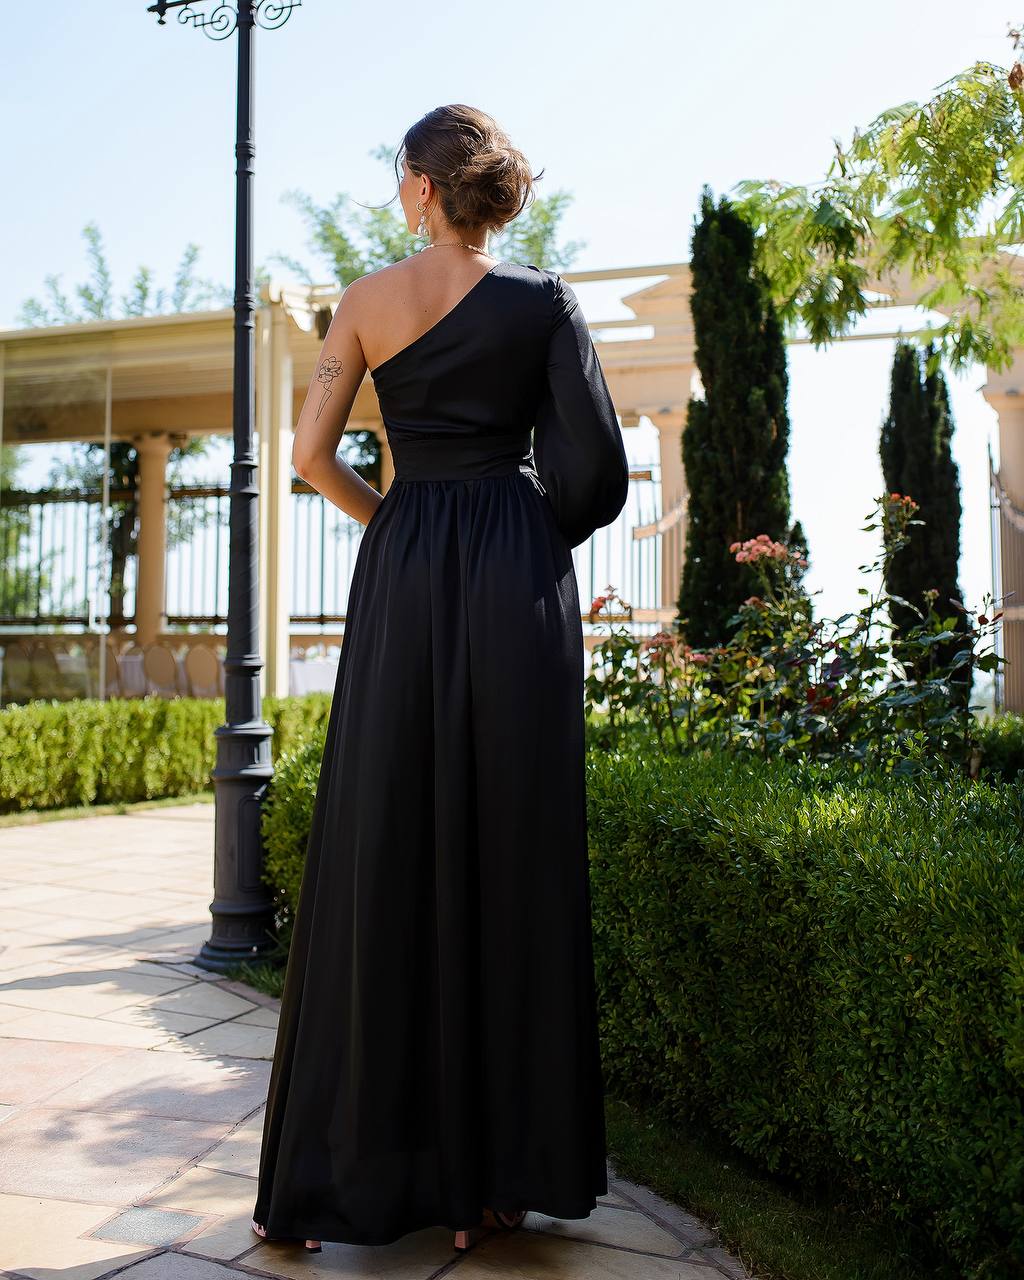 a woman in a long black dress standing on a sidewalk